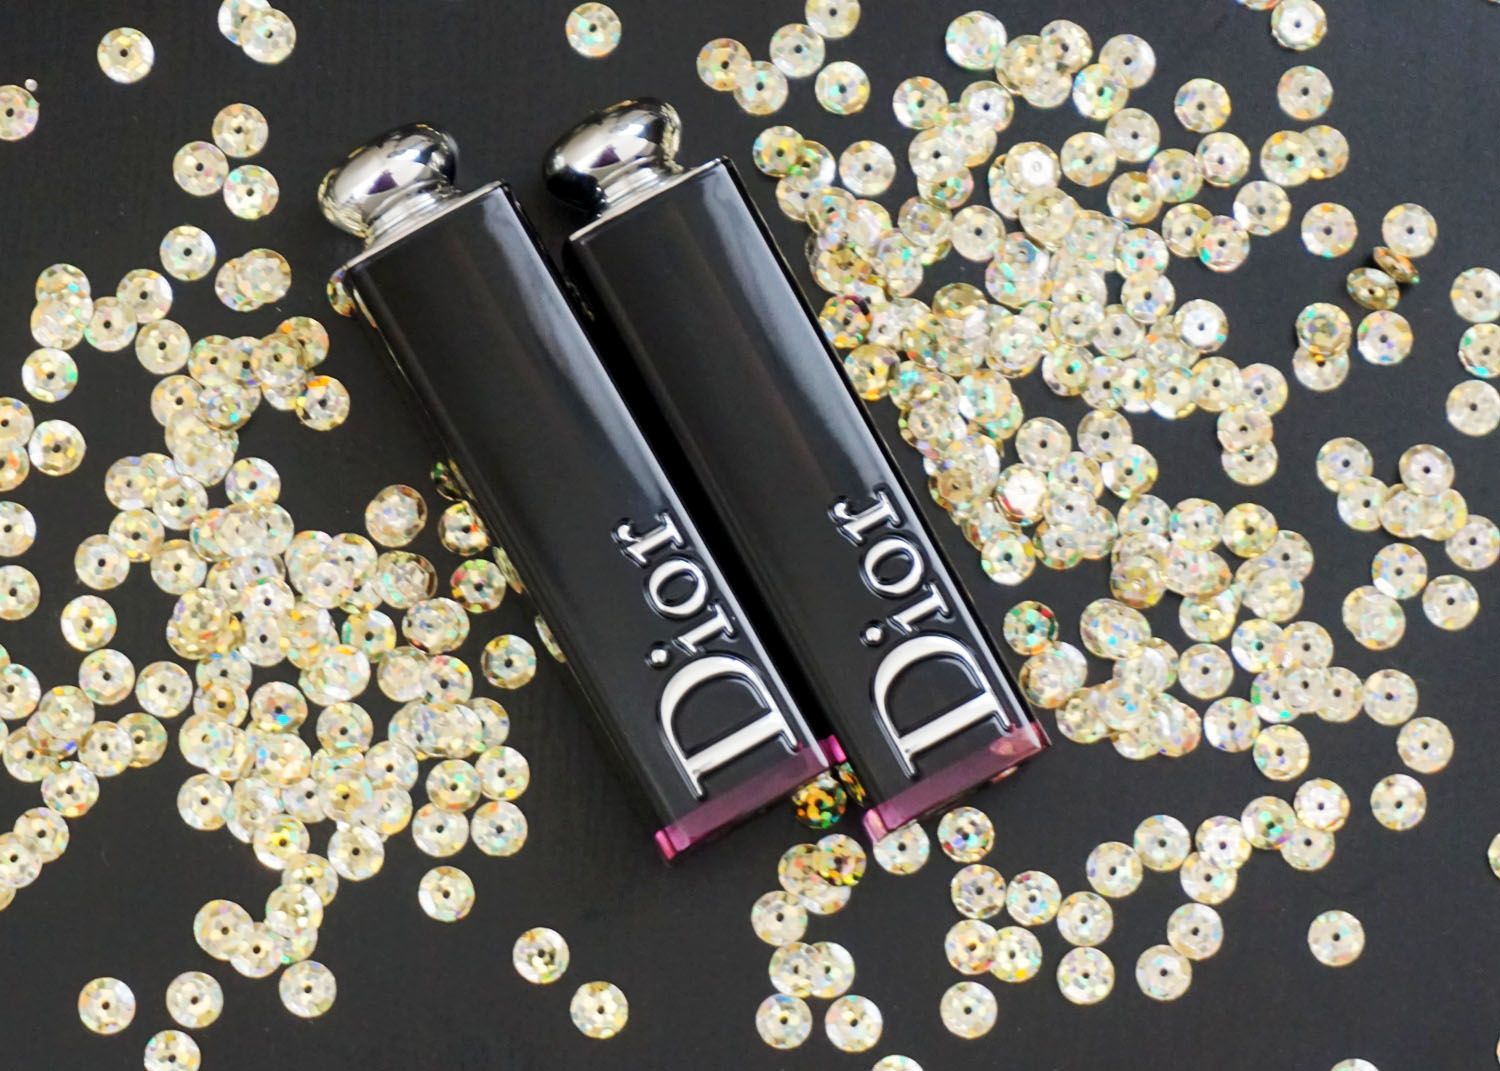 Dior Addict Lacquer Sticks (bellanoirbeauty.com)